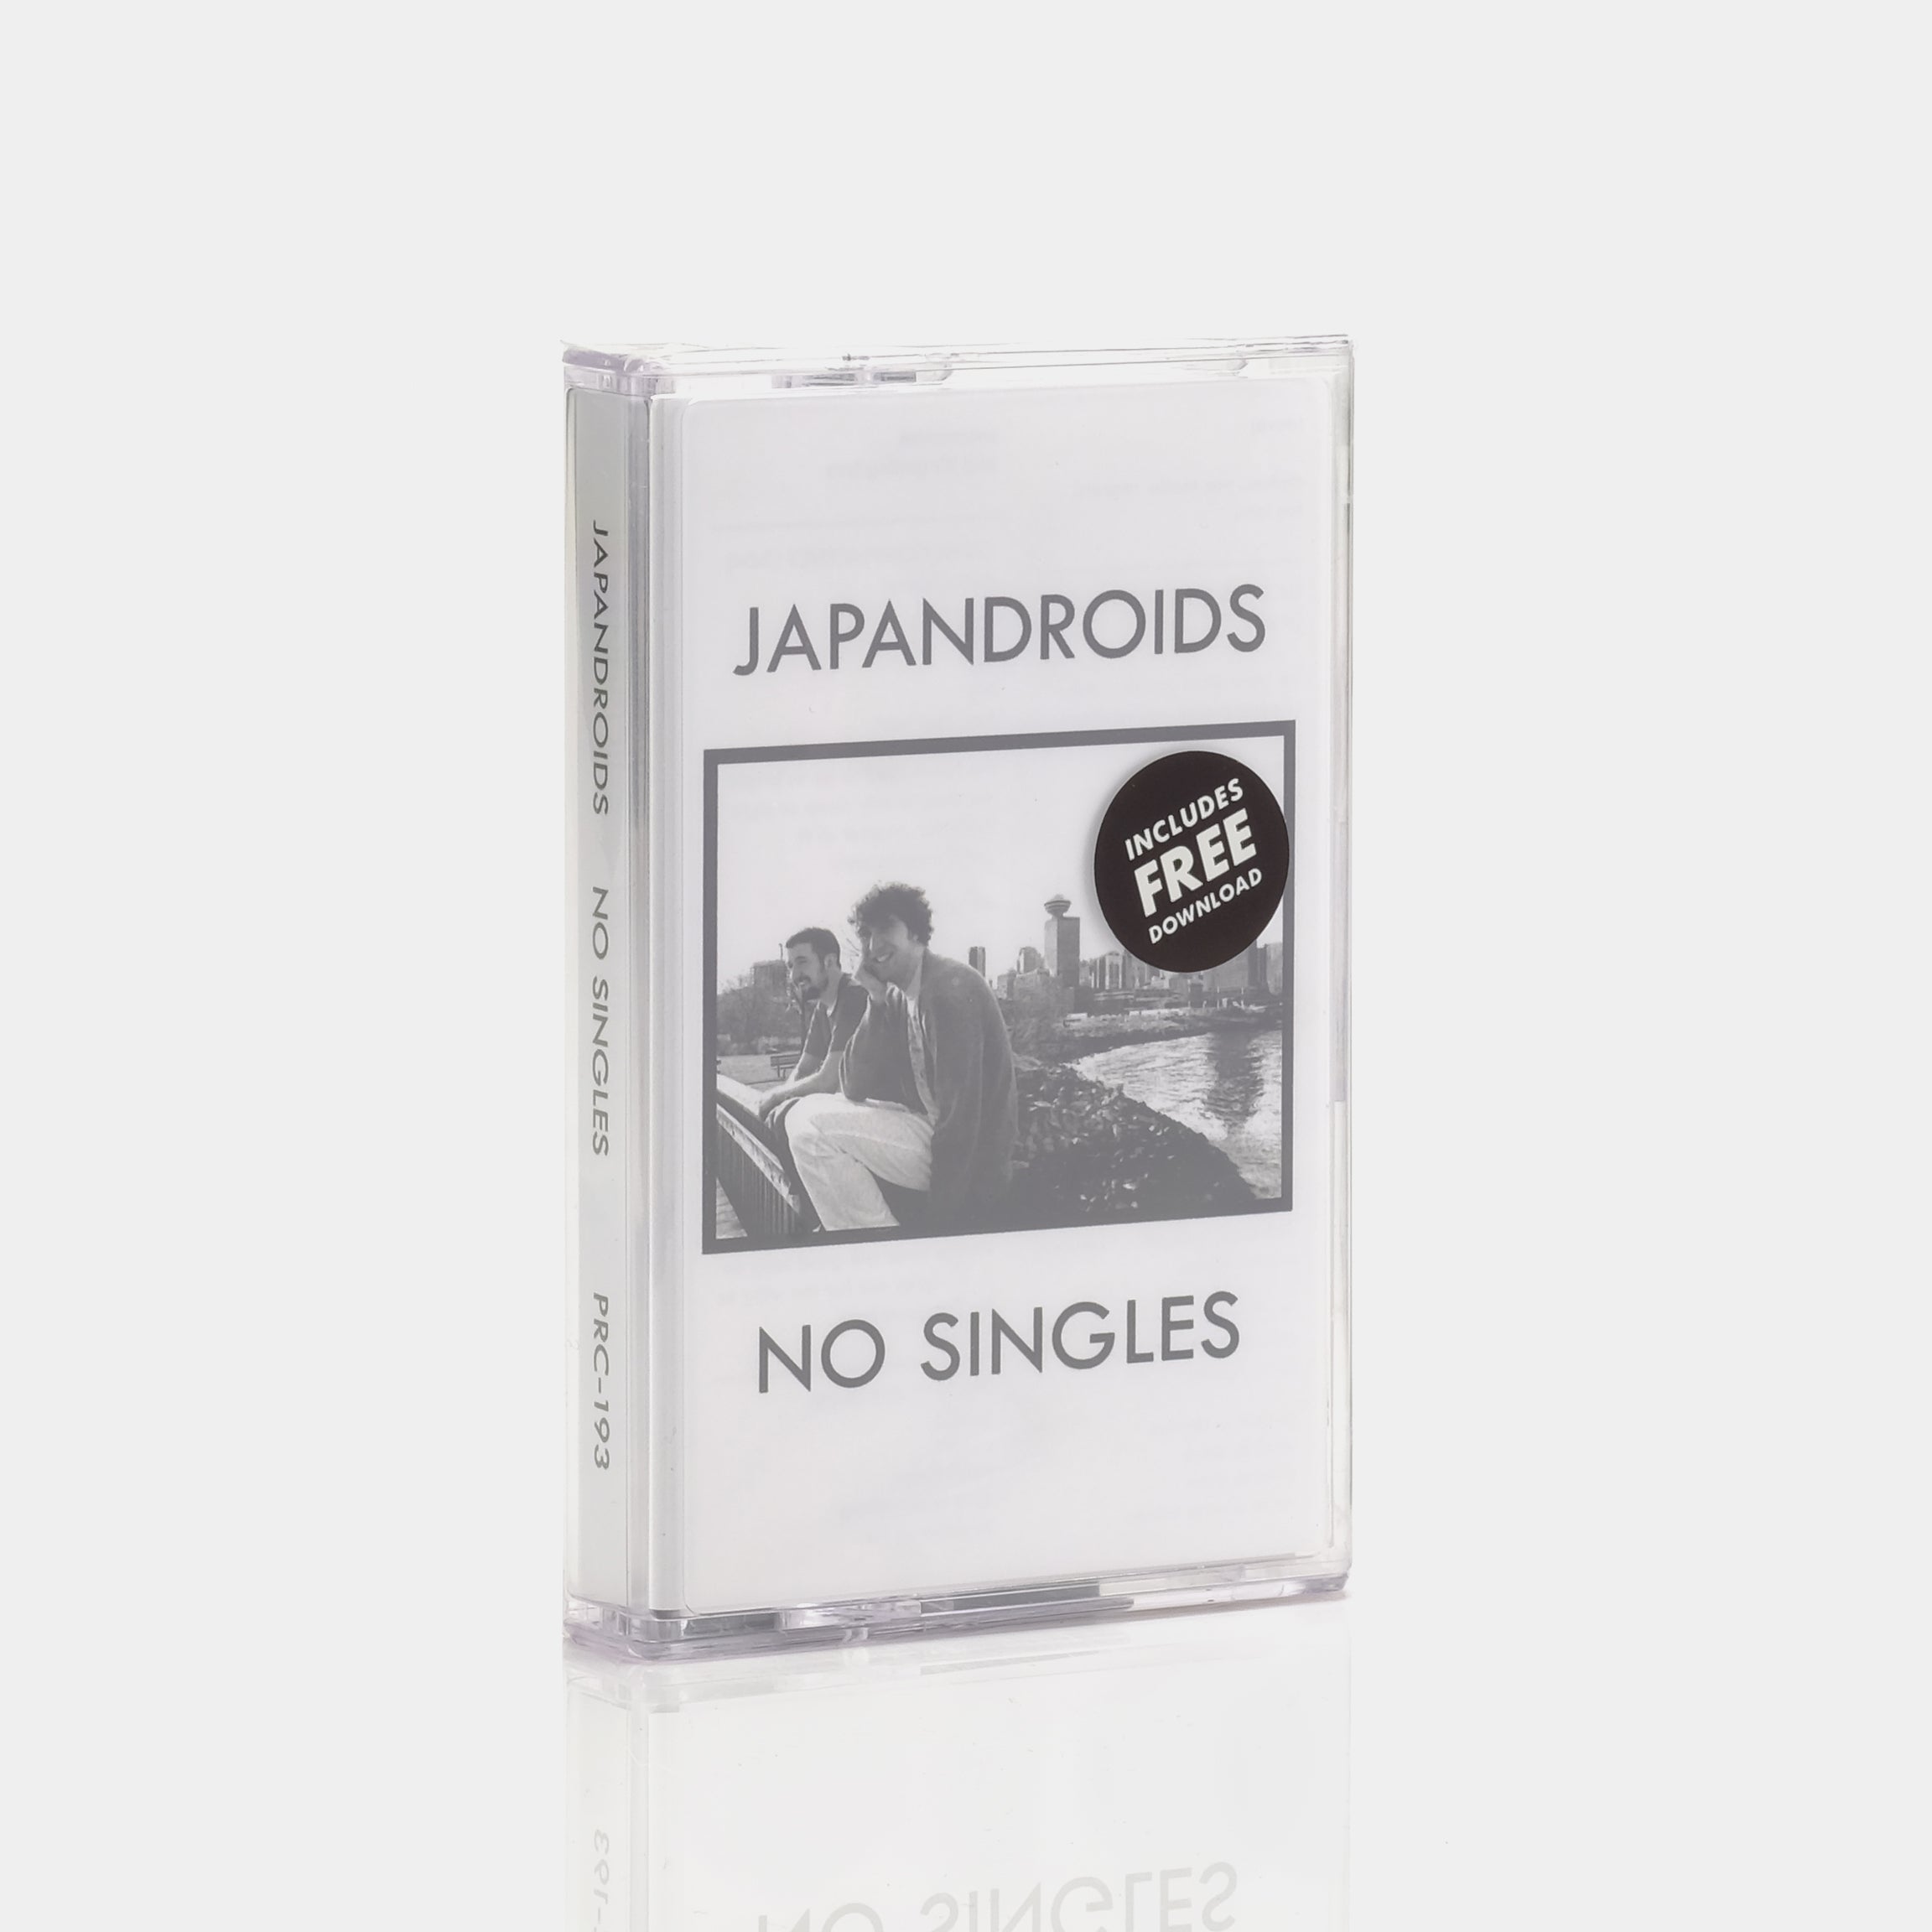 Japandroids - No Singles Cassette Tape